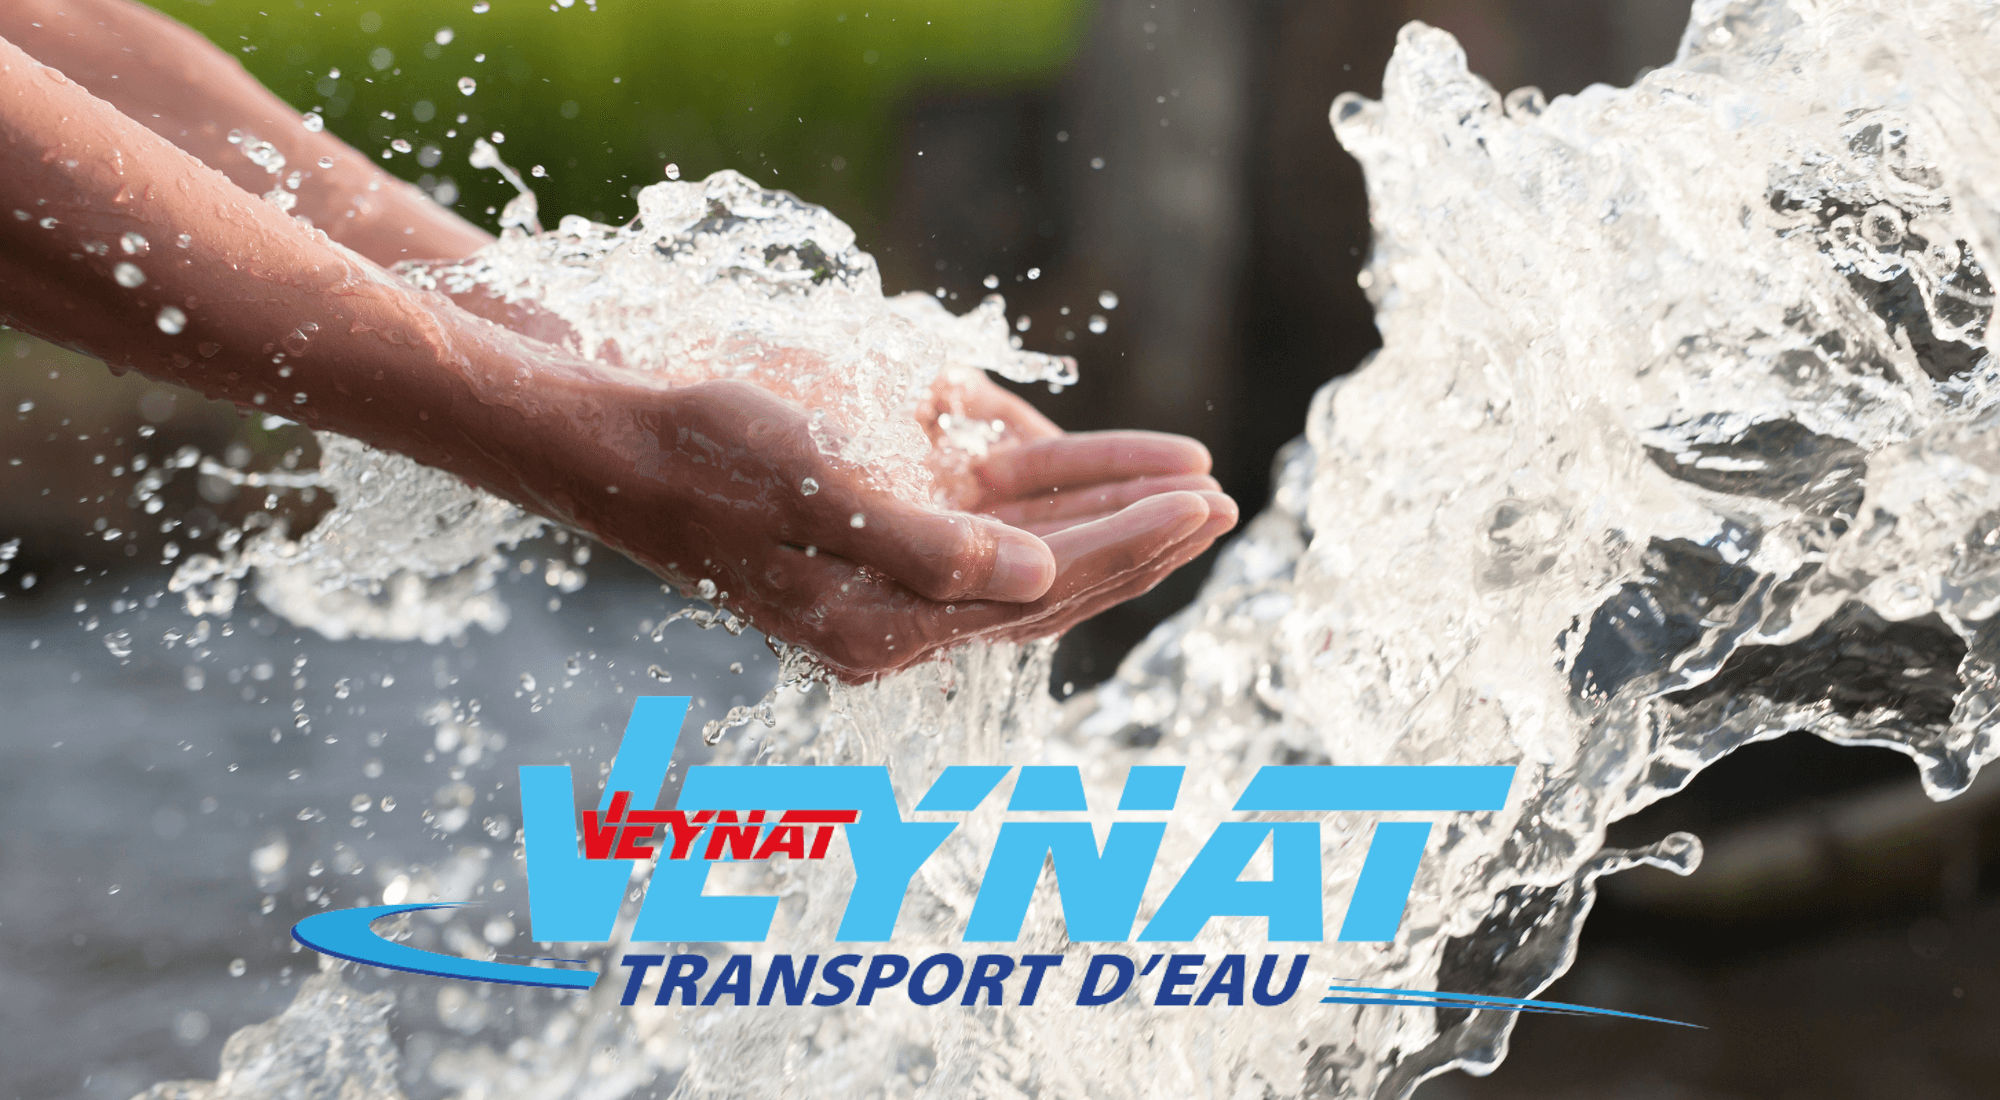 Une offre globale de service pour la préservation et la distribution d’eau - Transports Veynat